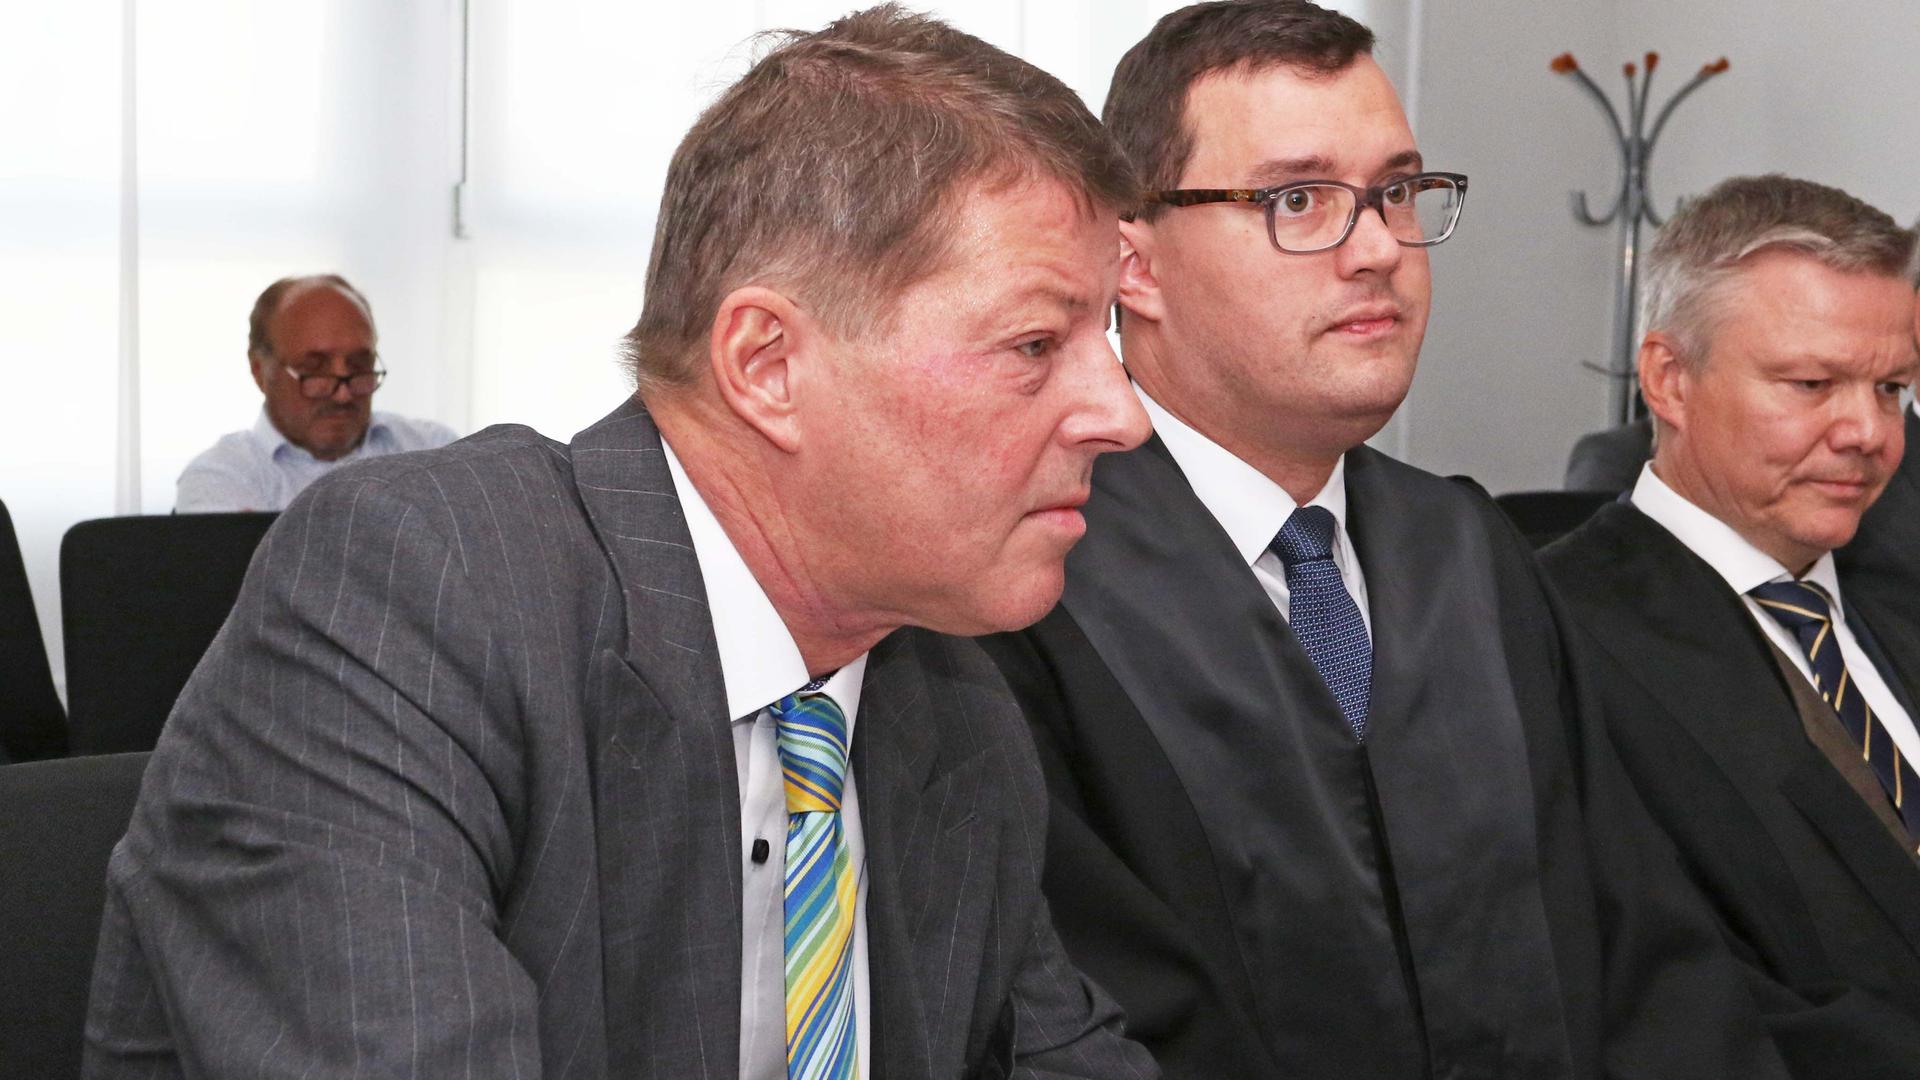 Langer Prozess: Die Ex-Geschäftsführer Roger Heidt (links) und Thomas Engelhard (rechts) wollen in der Pforzheimer Stadtwerke-Affäre nichts falsch gemacht haben und klagen gegen ihre fristlose Entlassung.